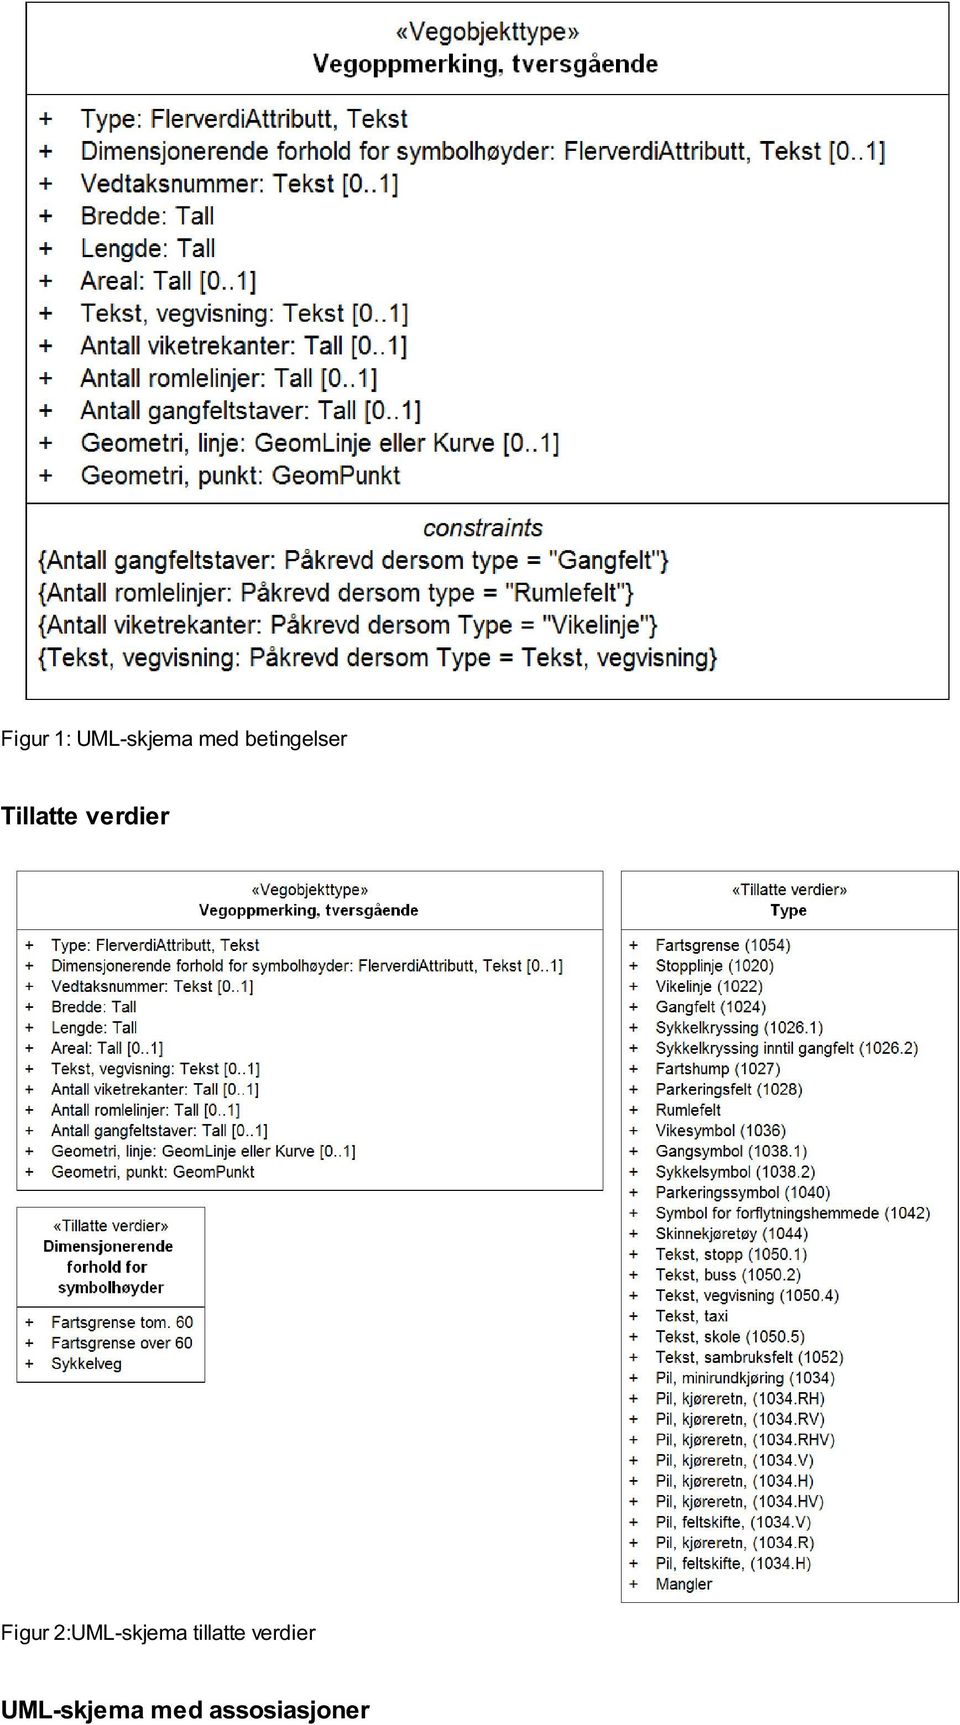 Figur 2:UML-skjema tillatte